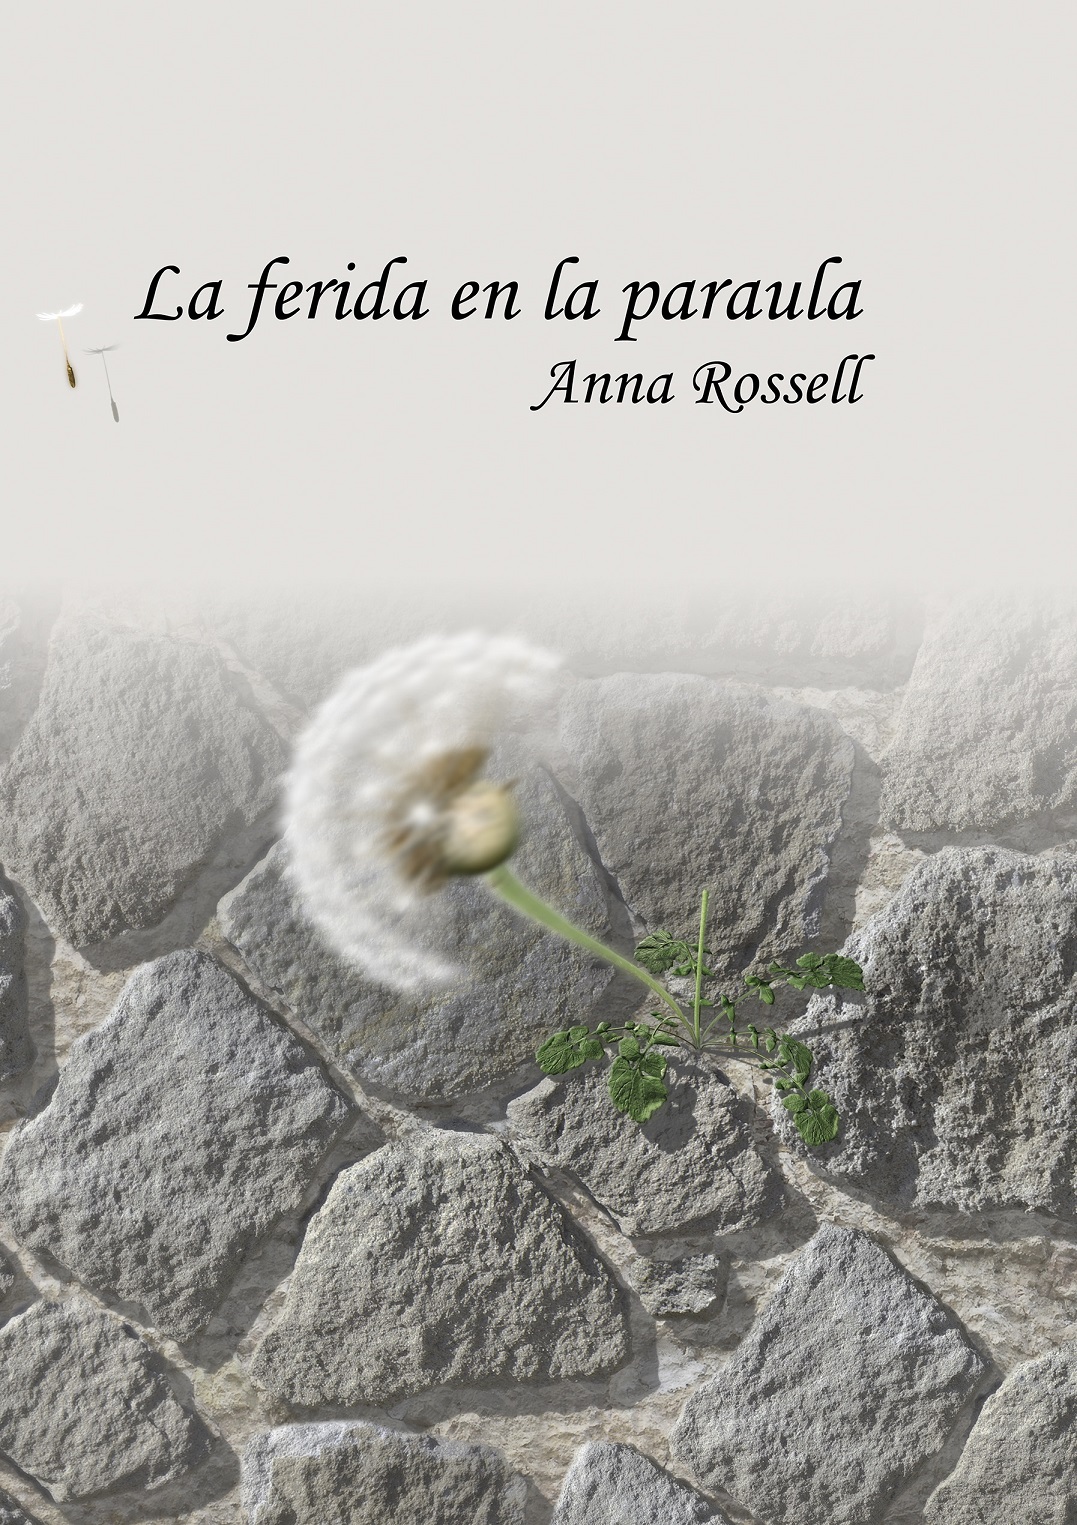 Cubierta del poemario de Anna Rossell «La ferida en la paraula», también disponible en e-pub